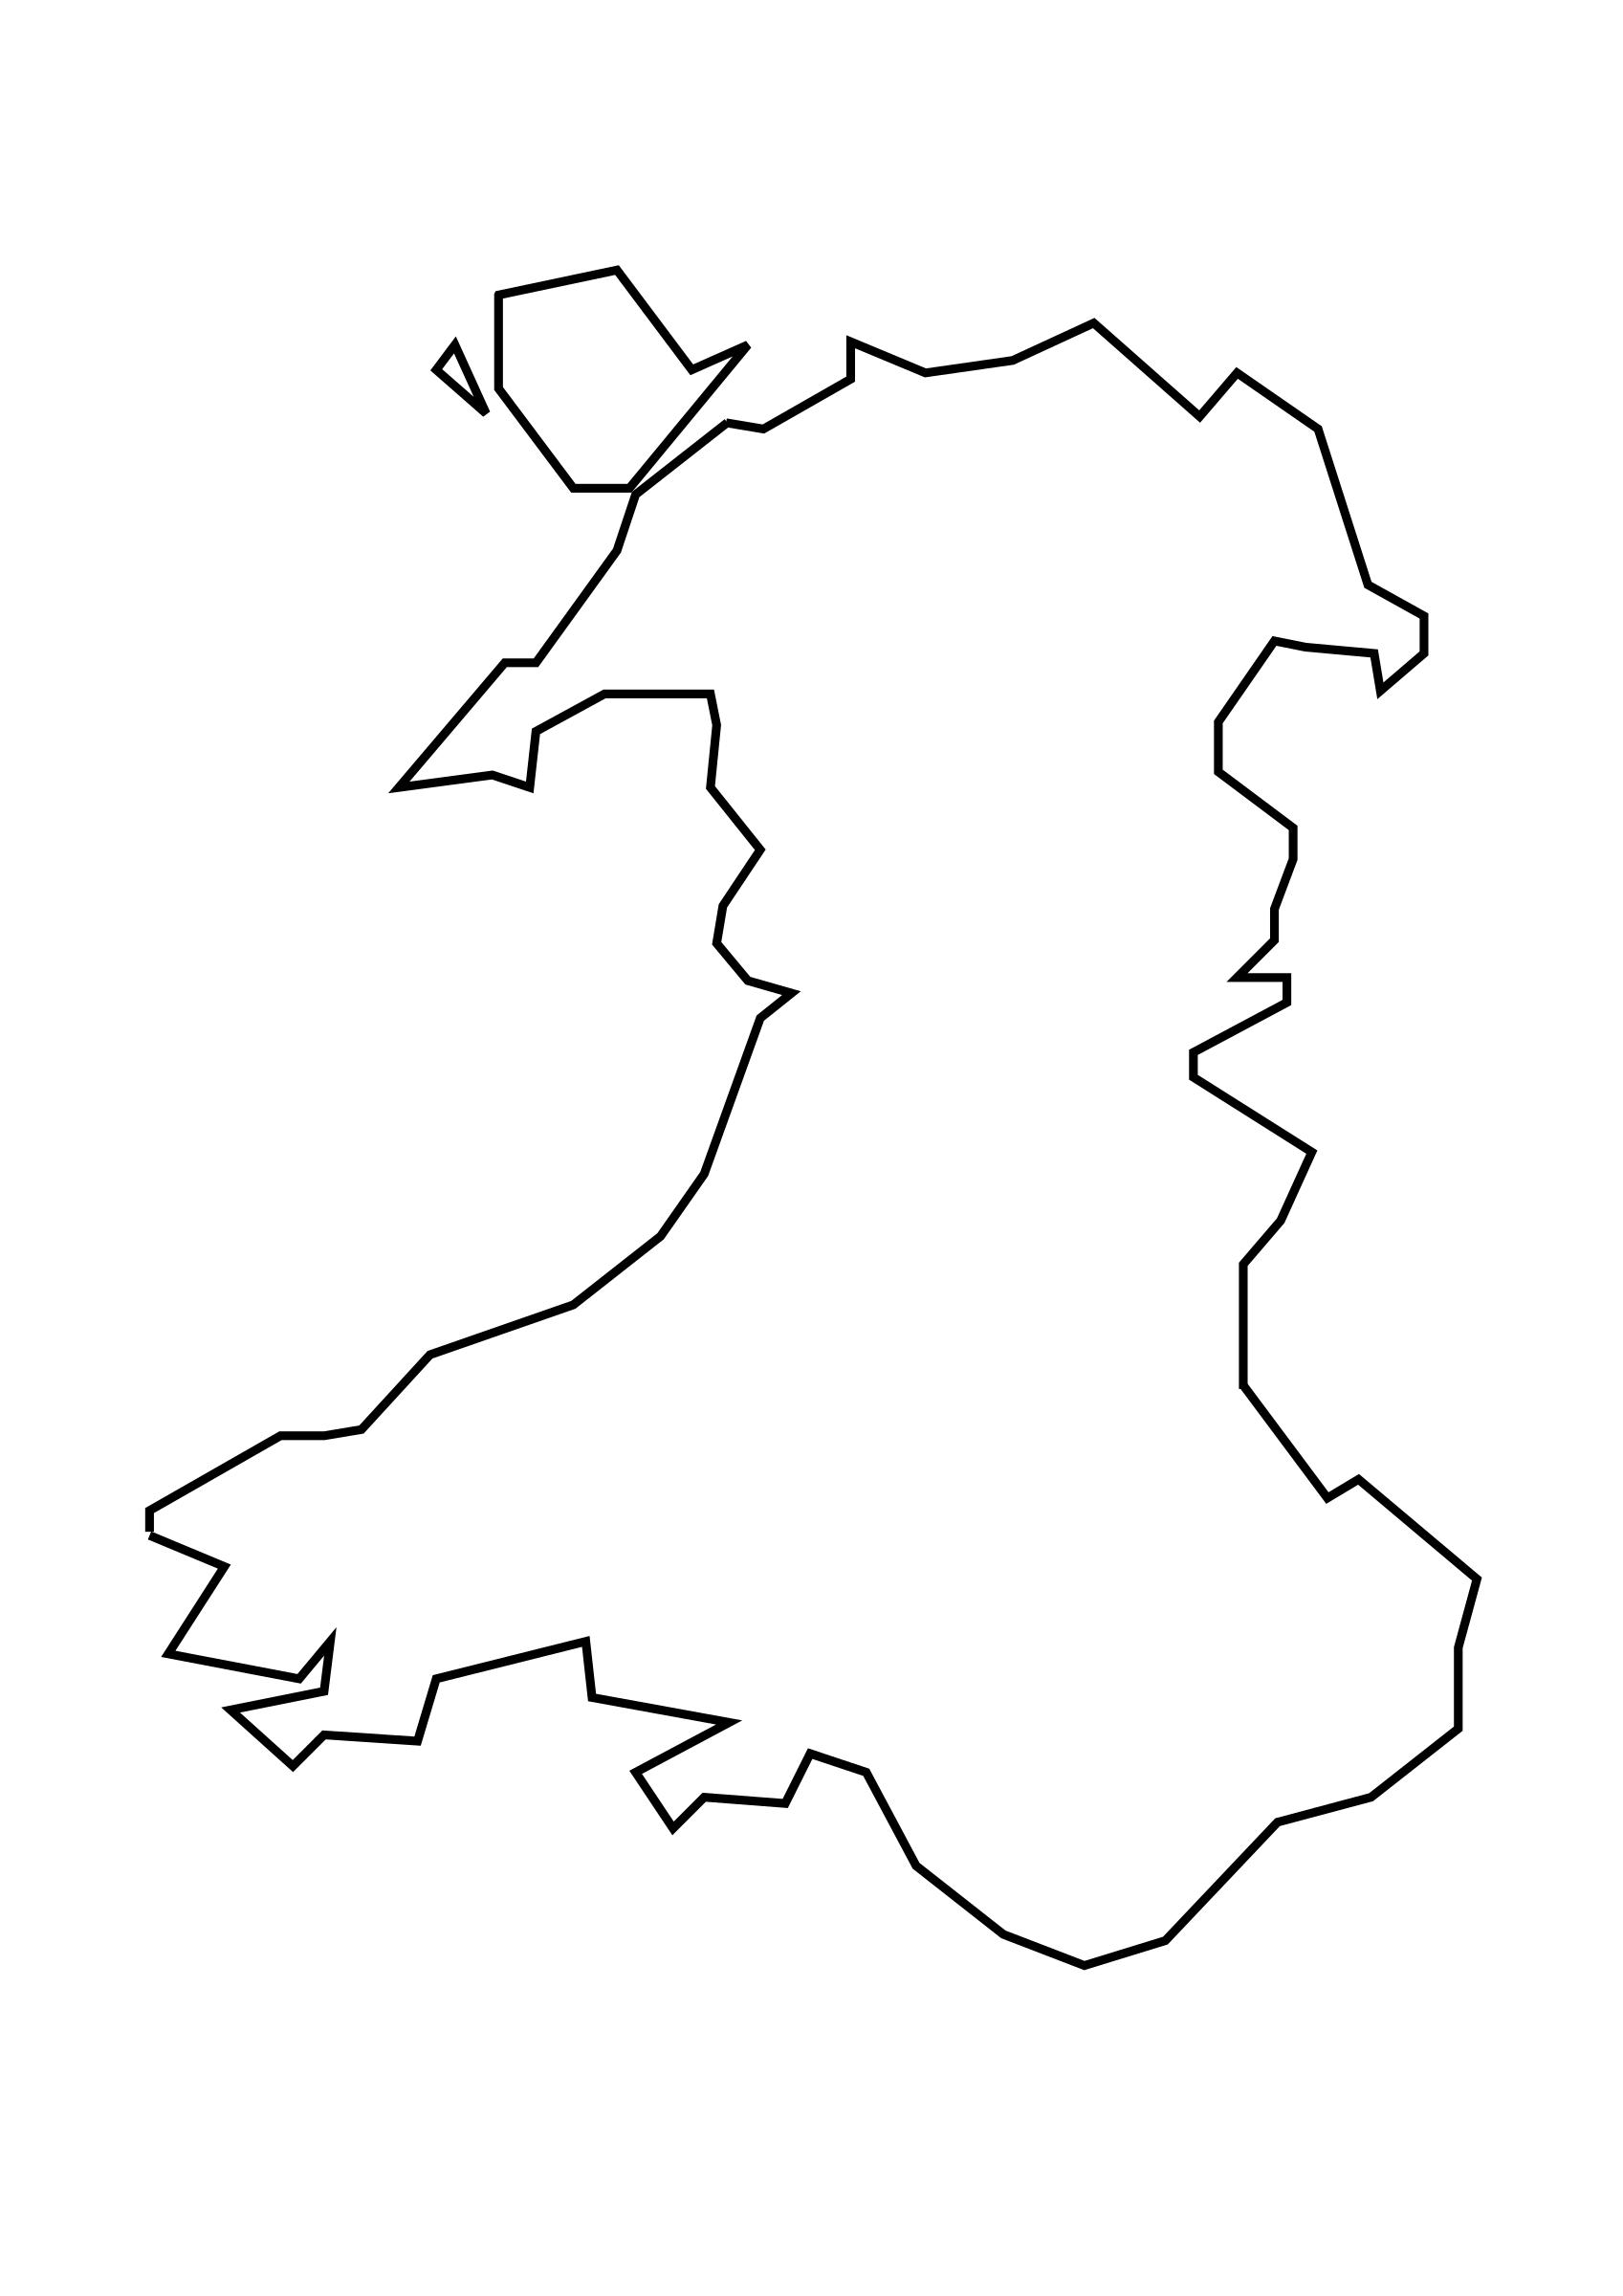 Wales Cymru Logo